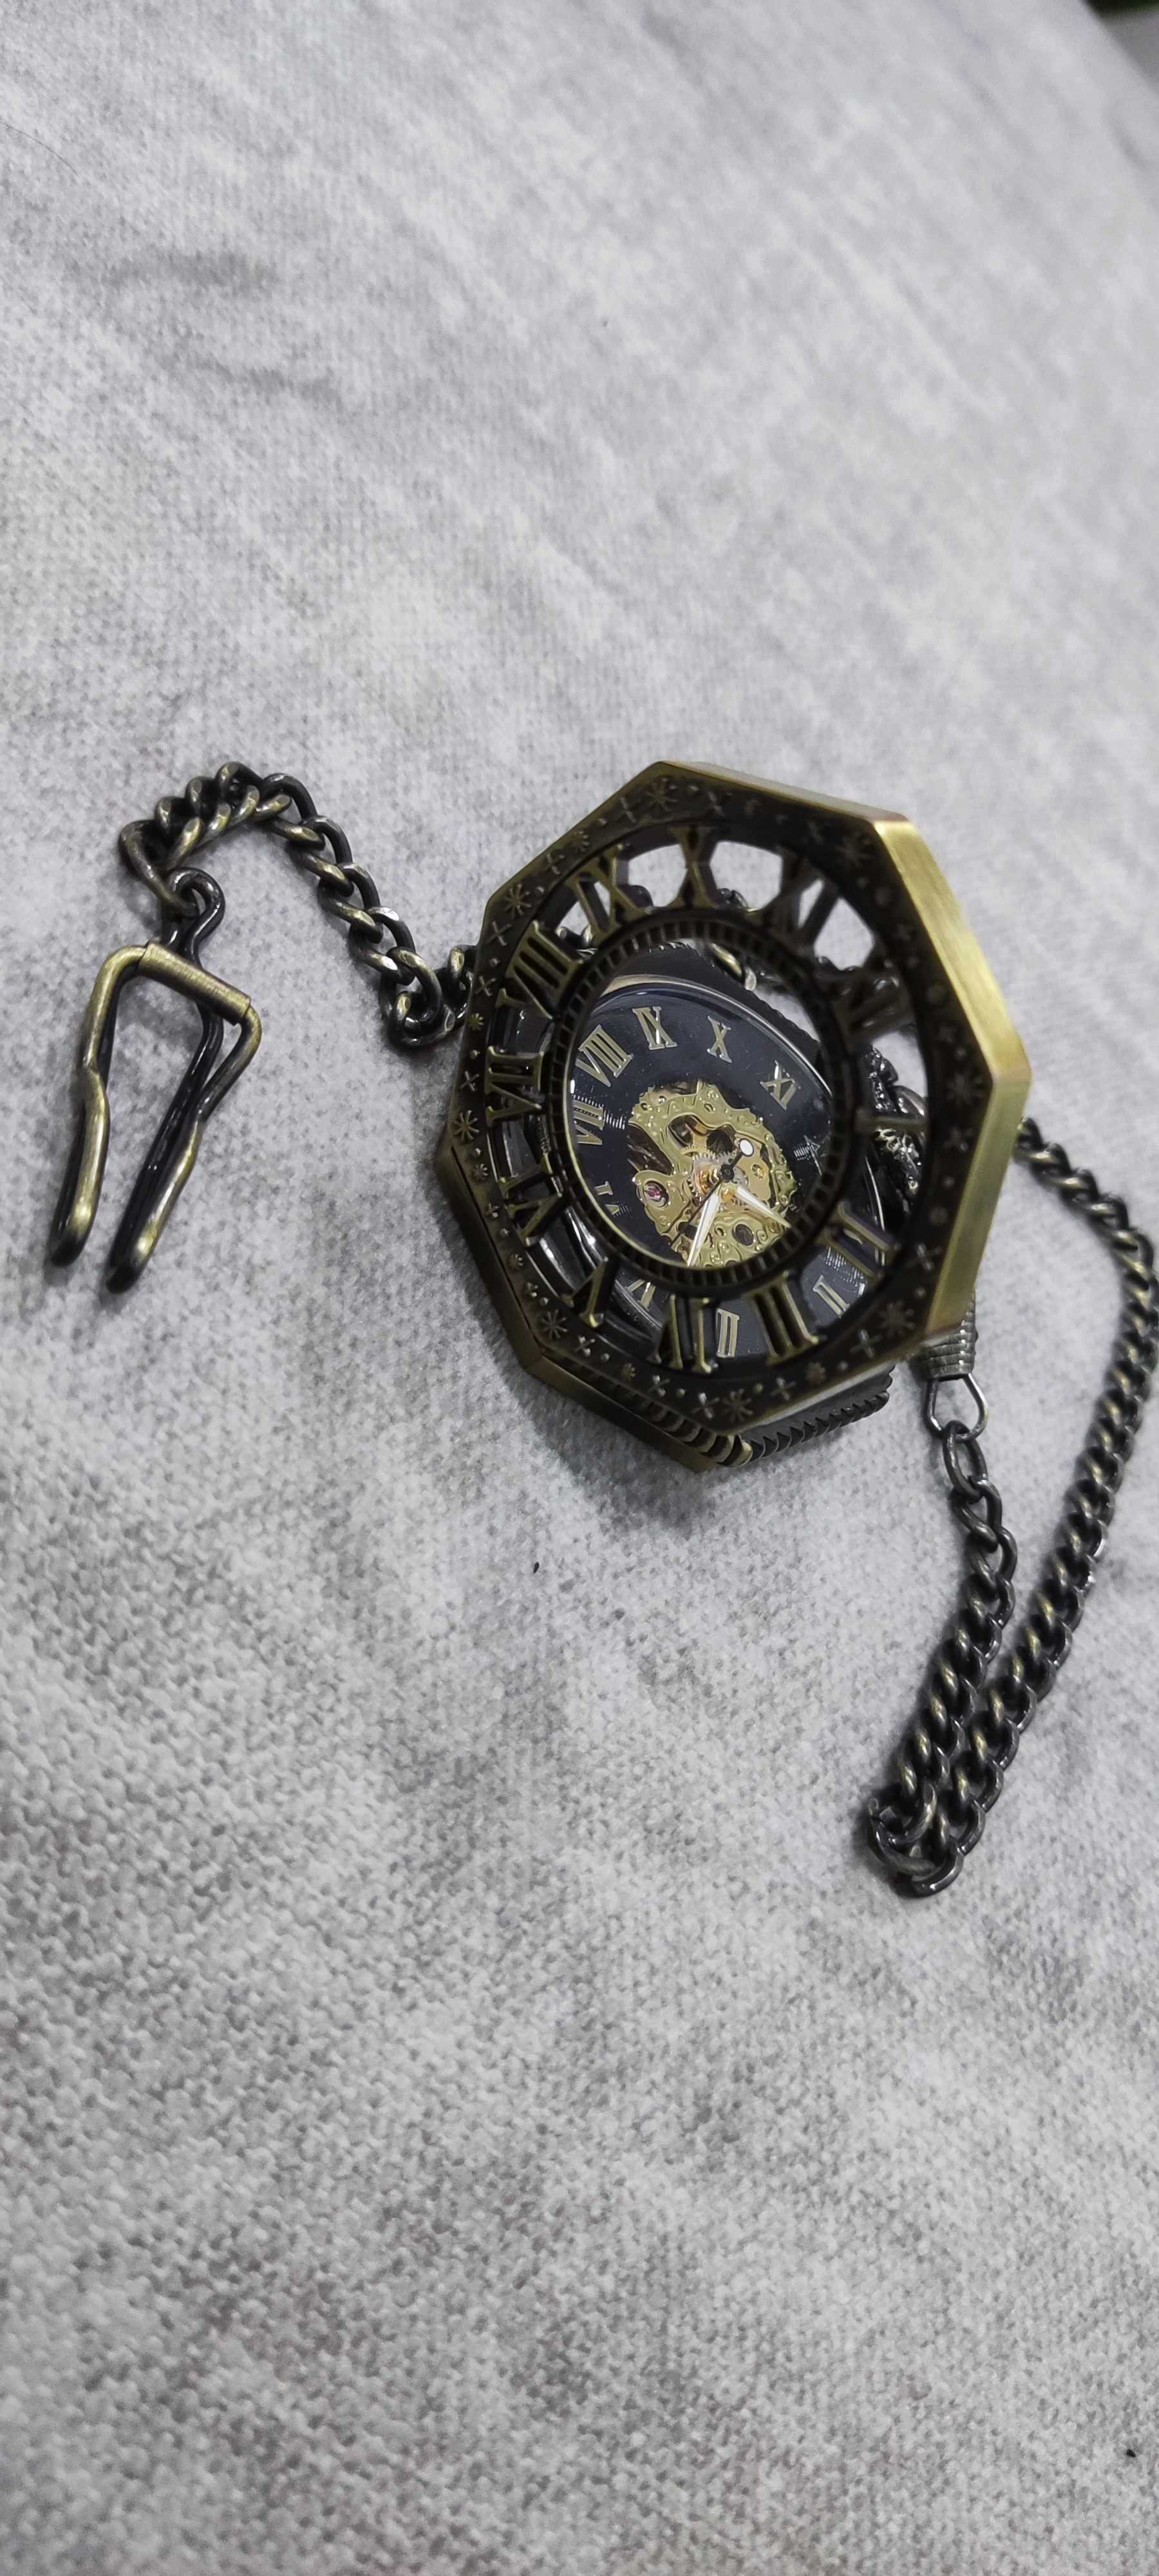 Relógio de Bolso Esqueleto Steampunk Hexagonal Dourado– Vintage